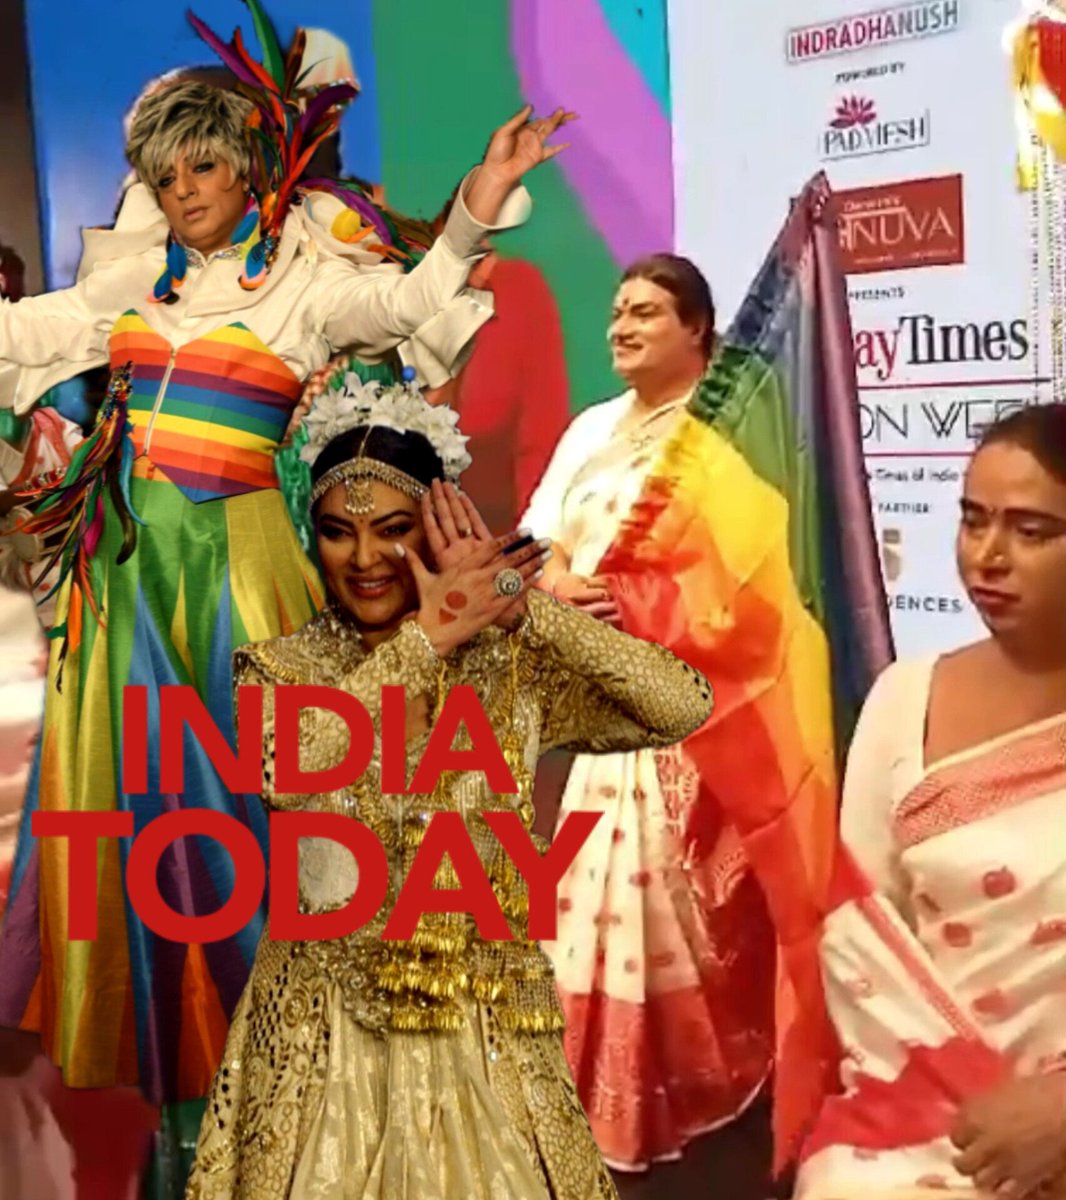 अभिनेत्री सुष्मिता सेन हाल ही में एक फैशन शो में अपने 'ताली' सह-कलाकार बॉबी कुमार के साथ रैंप पर चलकर शोस्टॉपर बनीं। और LGBTIQ+ समुदाय के प्रति अपना आभार व्यक्त किया।
: INDIA today
@rohitkverma
@sushmitasen47  @bombaytimes 
#BombayTimesFashionWeek2024 #Taali #Webseries #LGBTQ